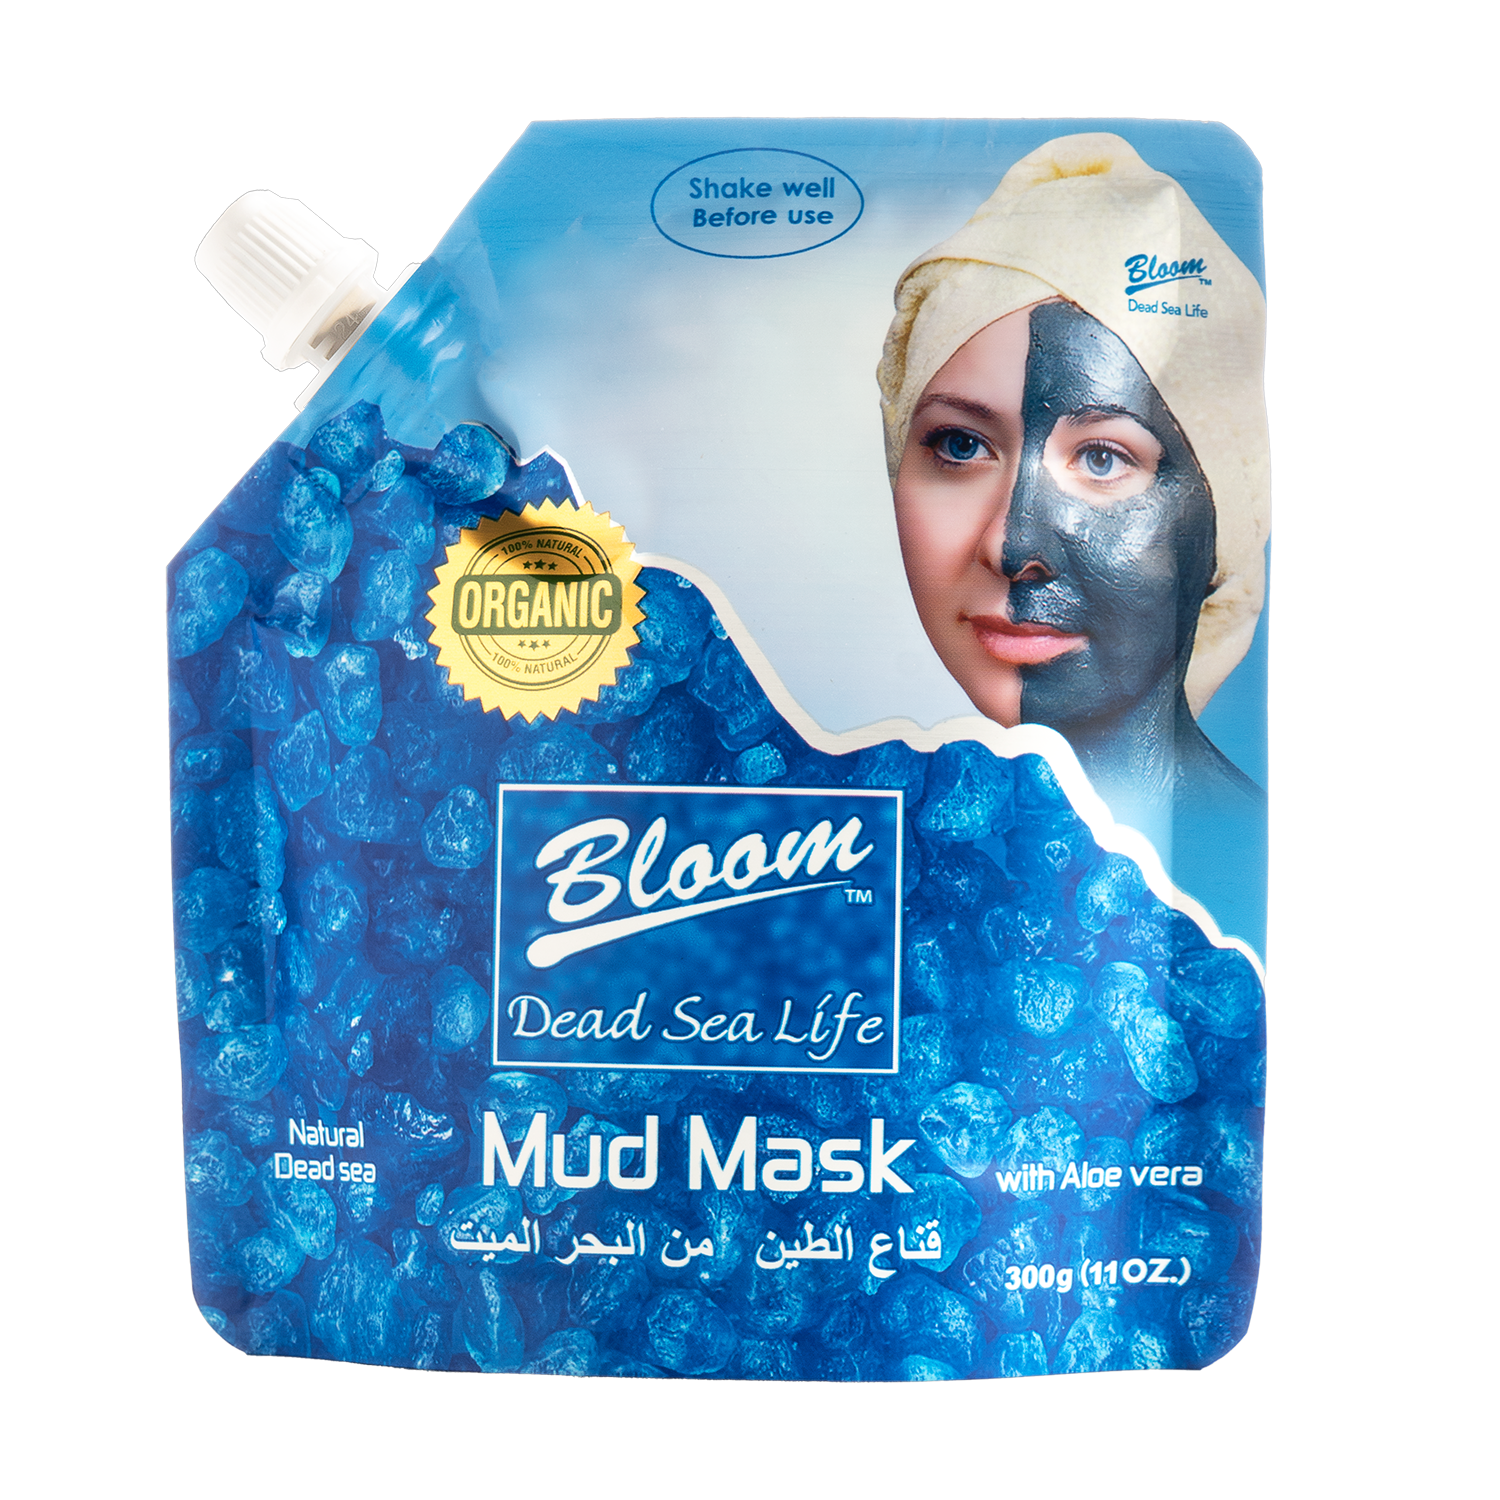 Dead Sea Mud Mask Bloom with Aloe Vera